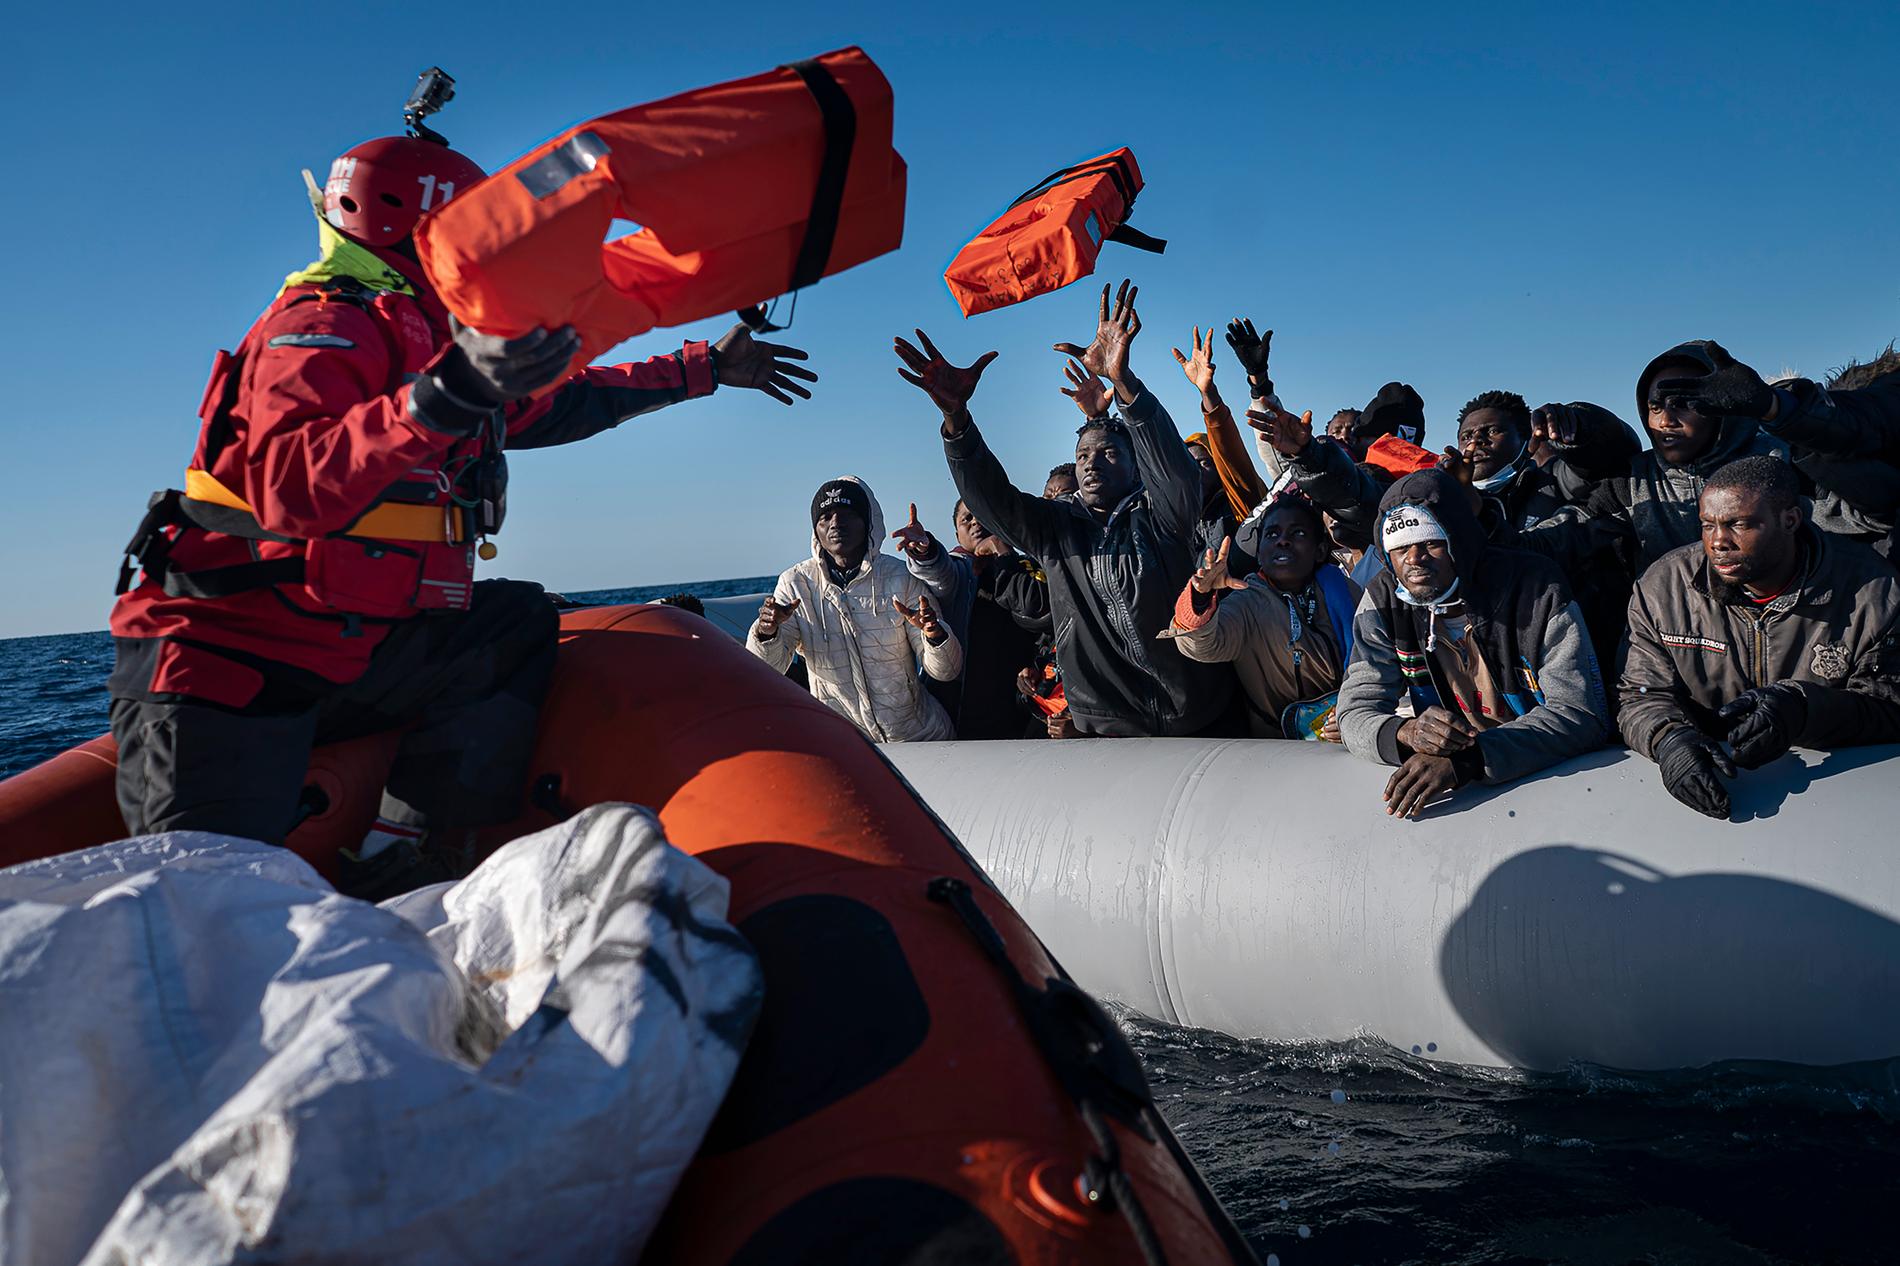 ”Mycket talar för att tusentals migranter fortsätter drunkna i Medelhavet varje år.”